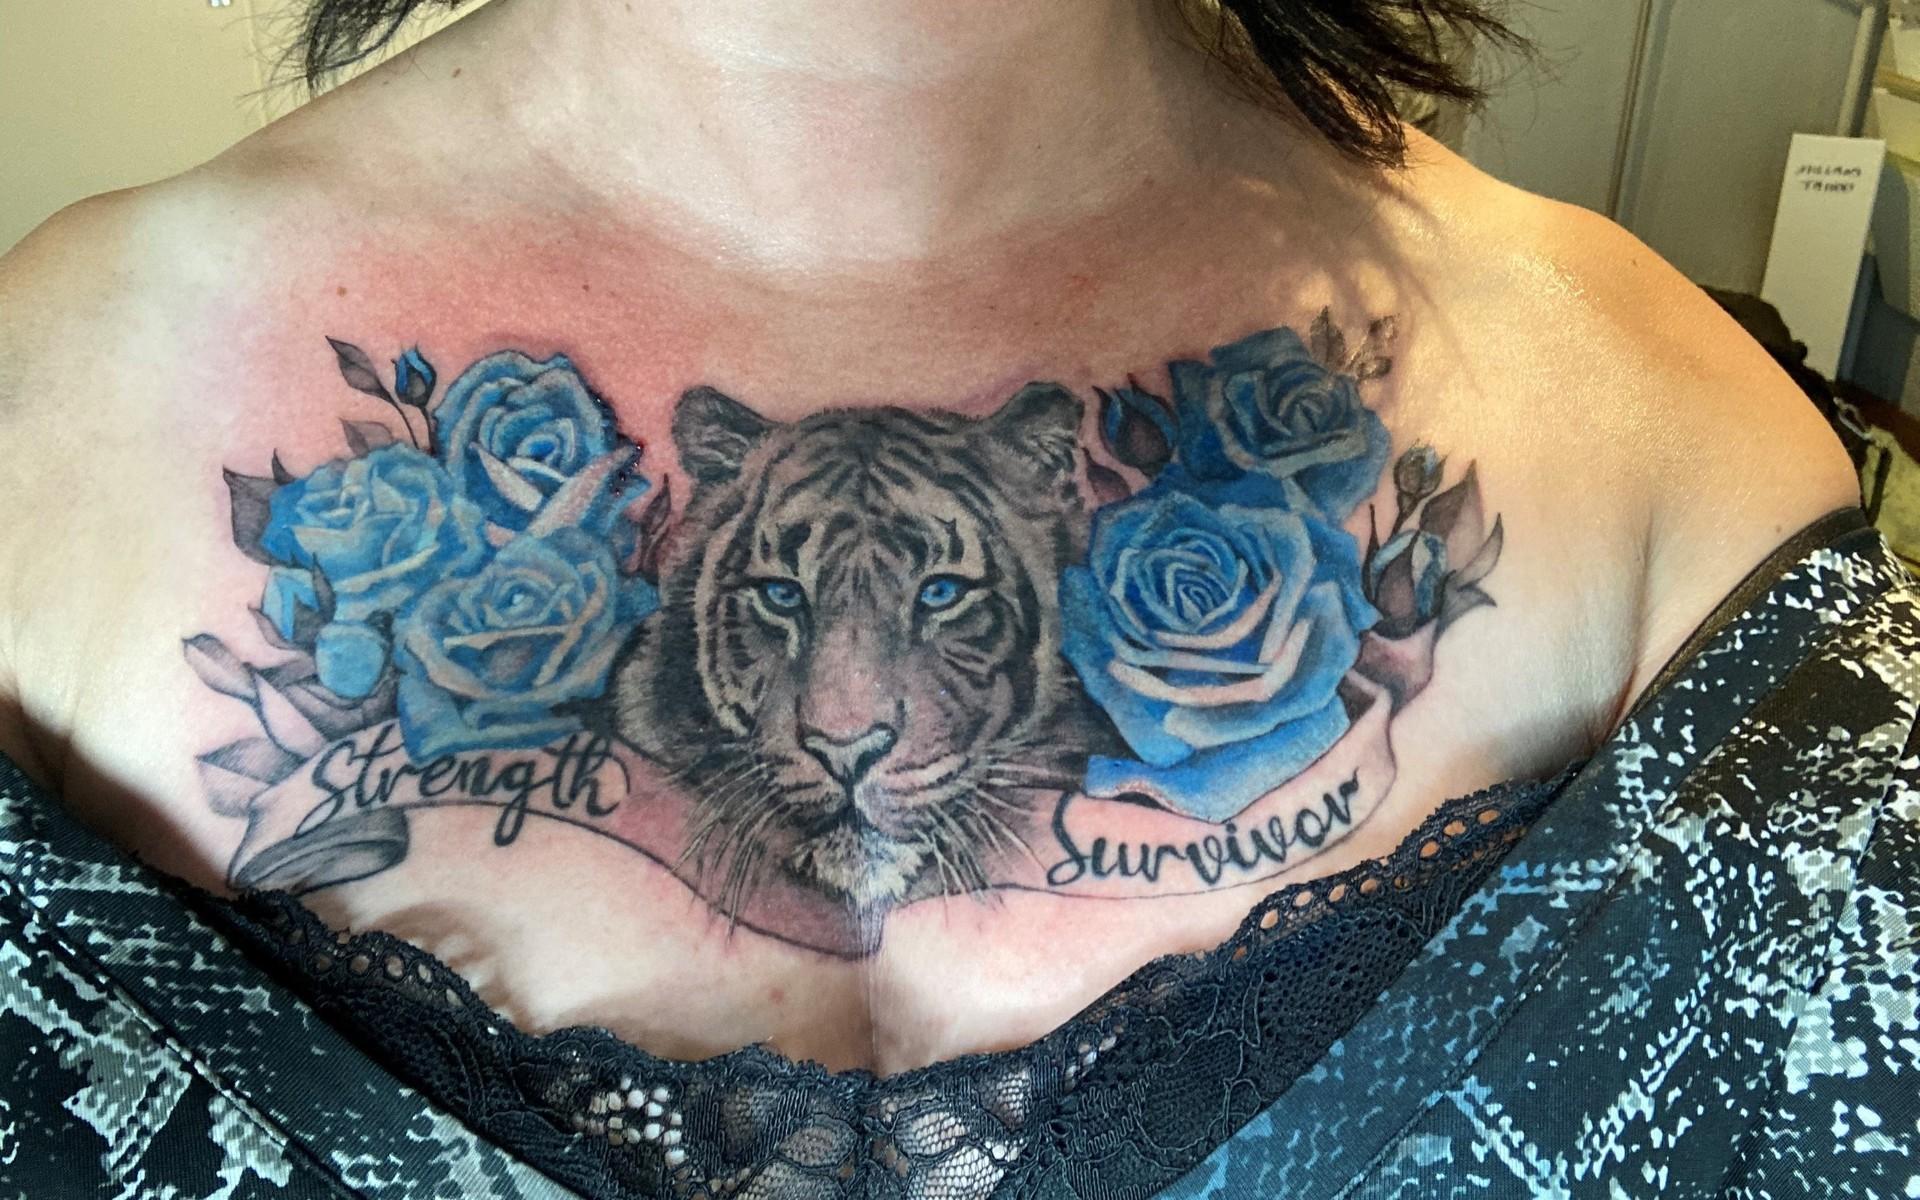 ”Jag har en tatuering som för mig symboliserar styrka. Min styrka. Jag är en överlevare!”, skriver Carita Marchini om sin tatuering.